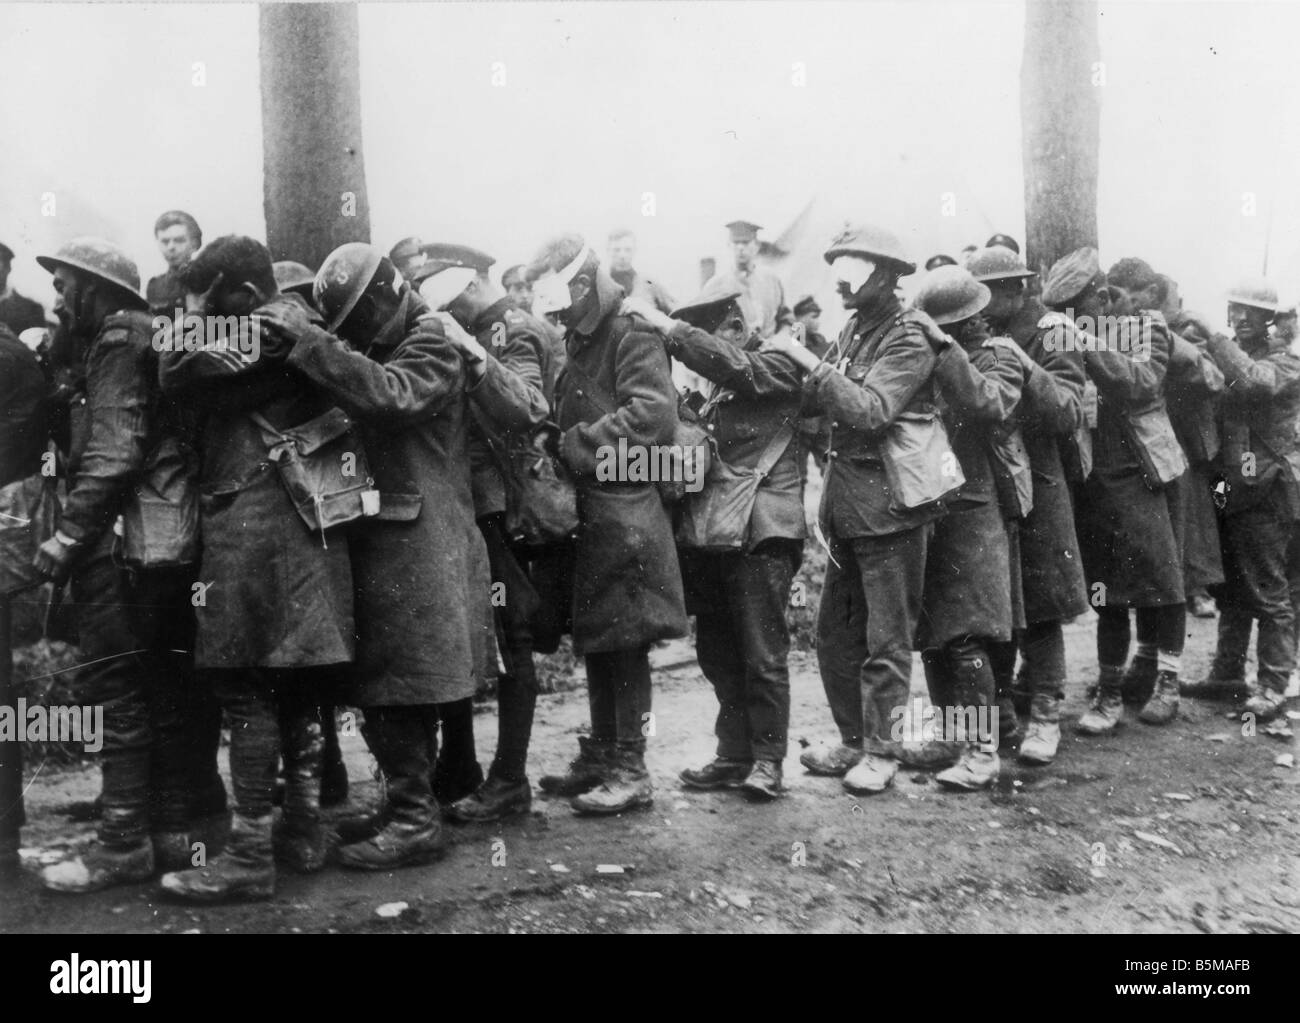 2 G55 W1 1918 24 britische Soldaten durch Tränengas 1918 Geschichte des 1. Weltkrieges Westfront britische Soldaten verwundet durch Tränengas verwundet Stockfoto